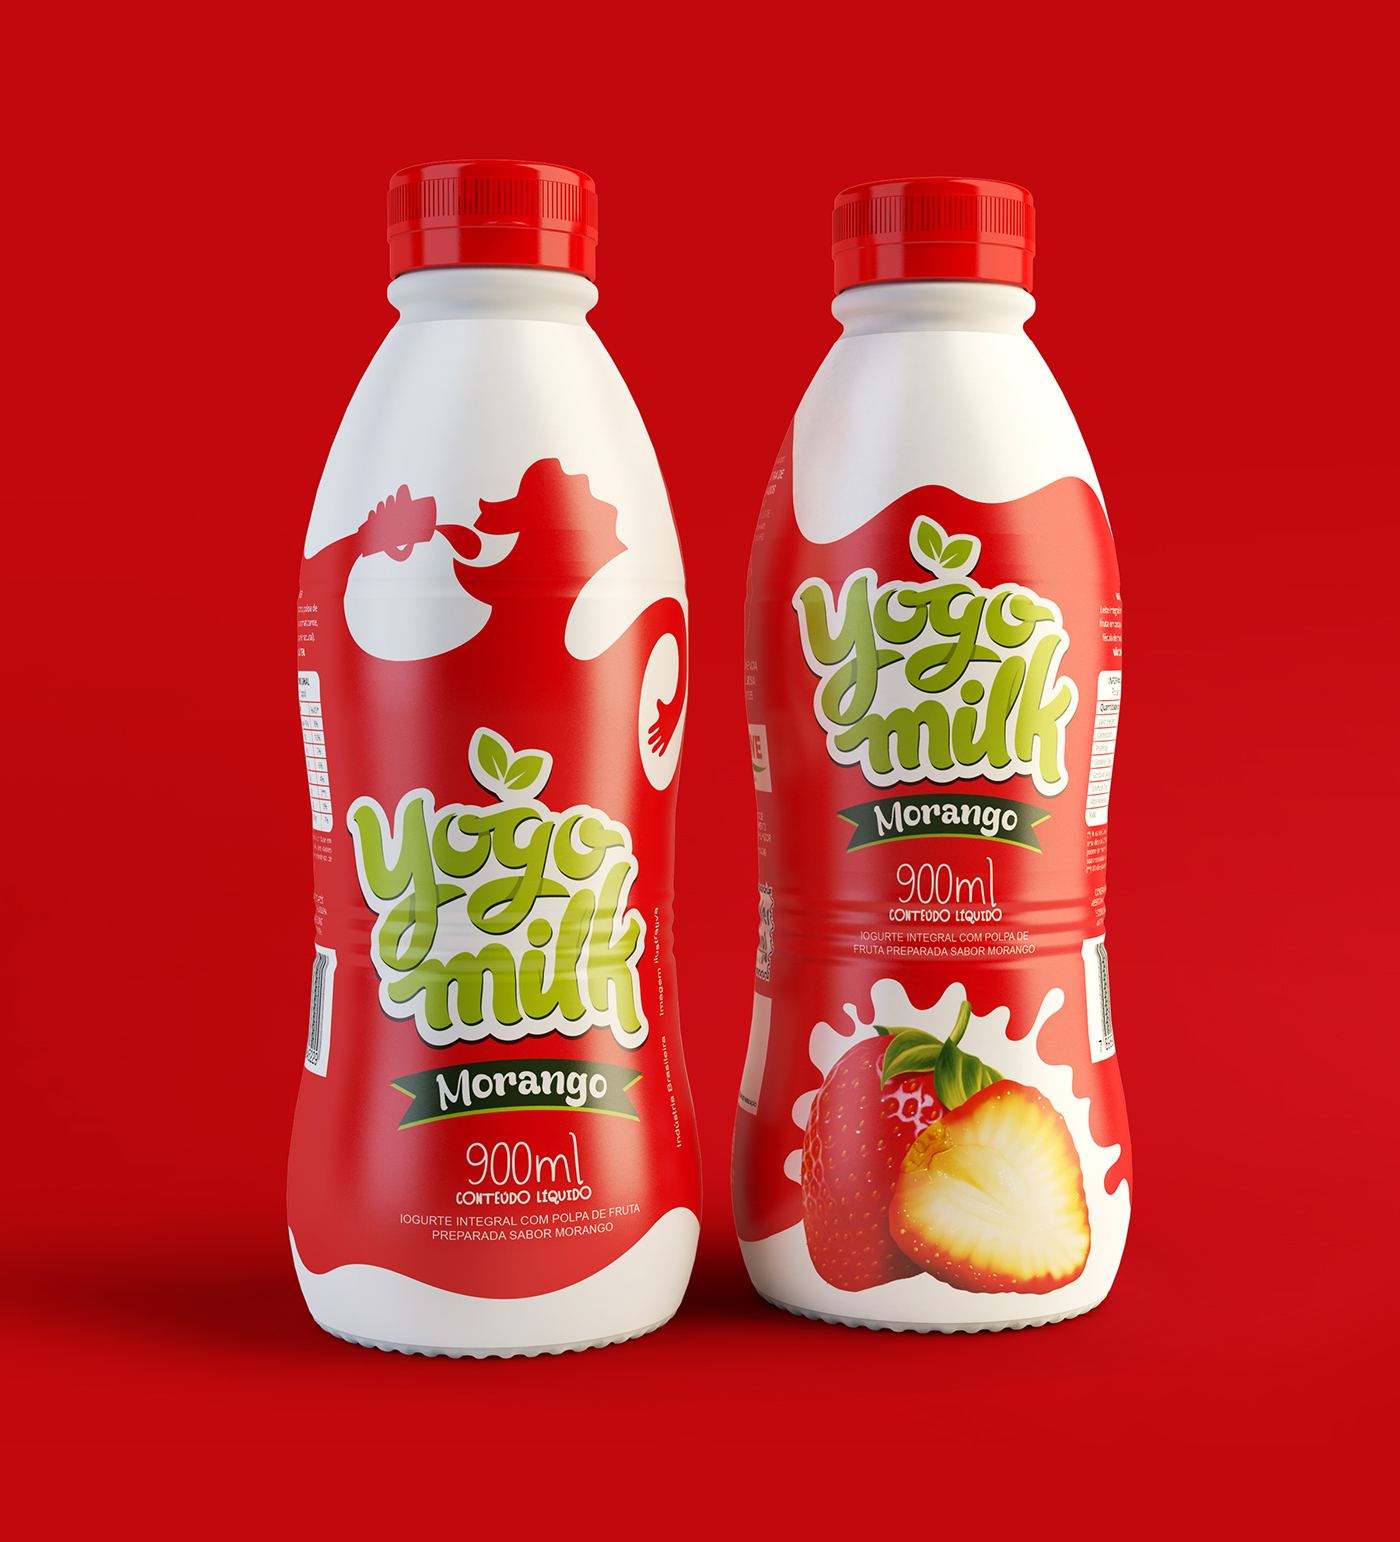 Yogurt packaging, Milk packaging, Juice packaging